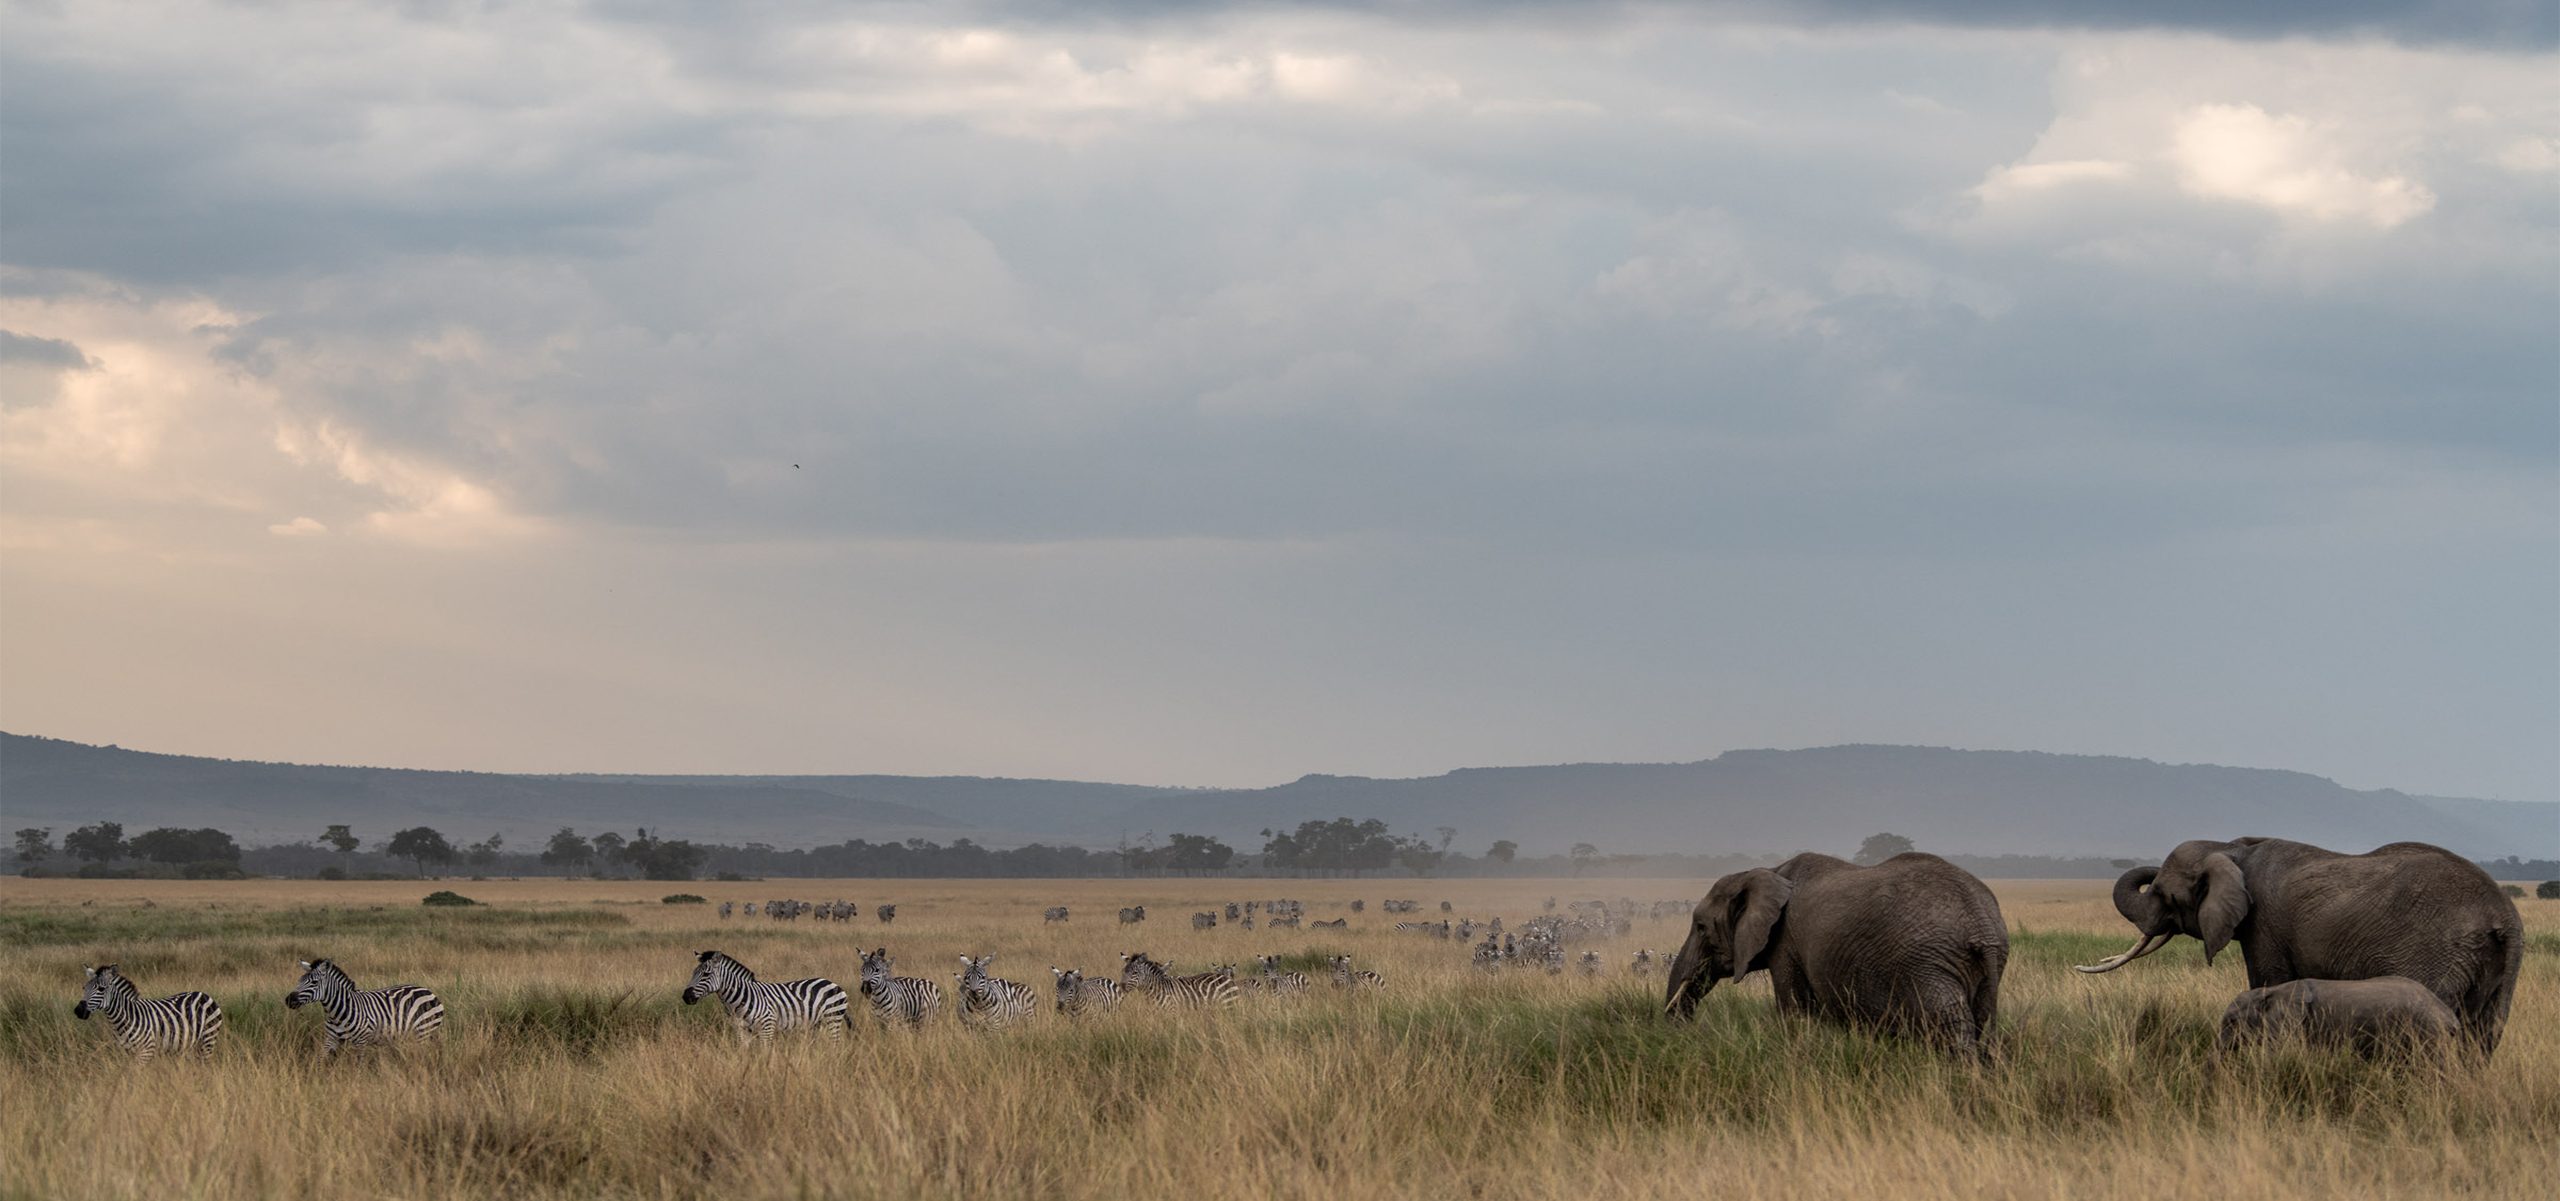 Kenya - Maasai Mara